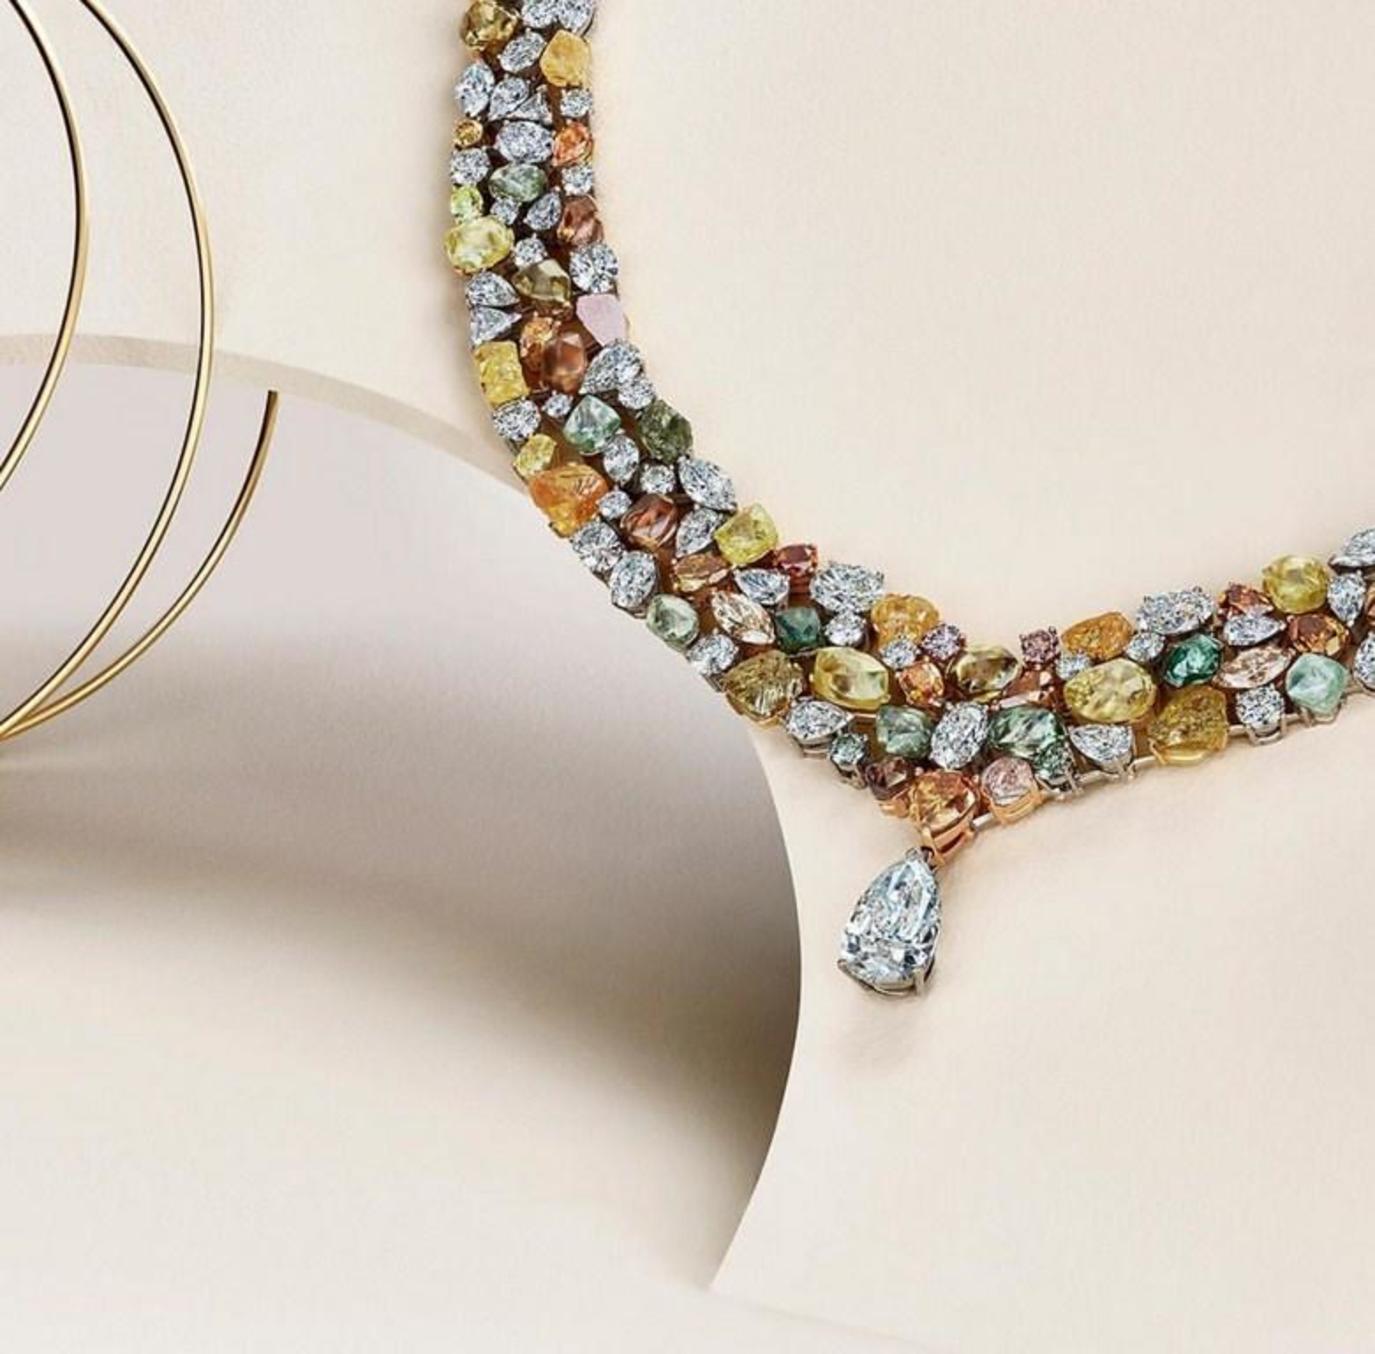 تصاميم قطع مجوهرات عالمية من أرقى المصممين